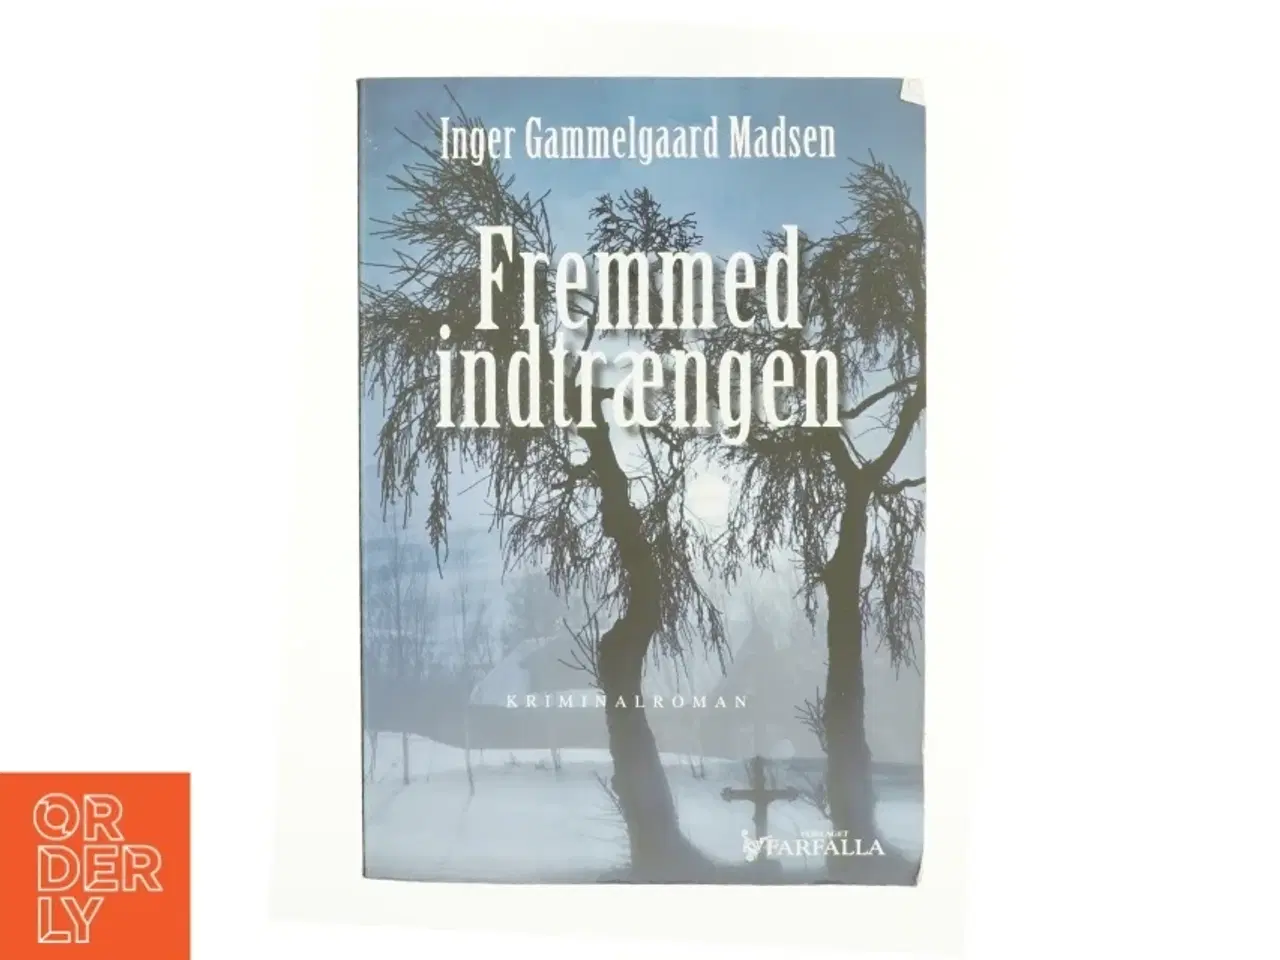 Billede 1 - Fremmed indtrængen : kriminalroman af Inger Gammelgaard Madsen (Bog)